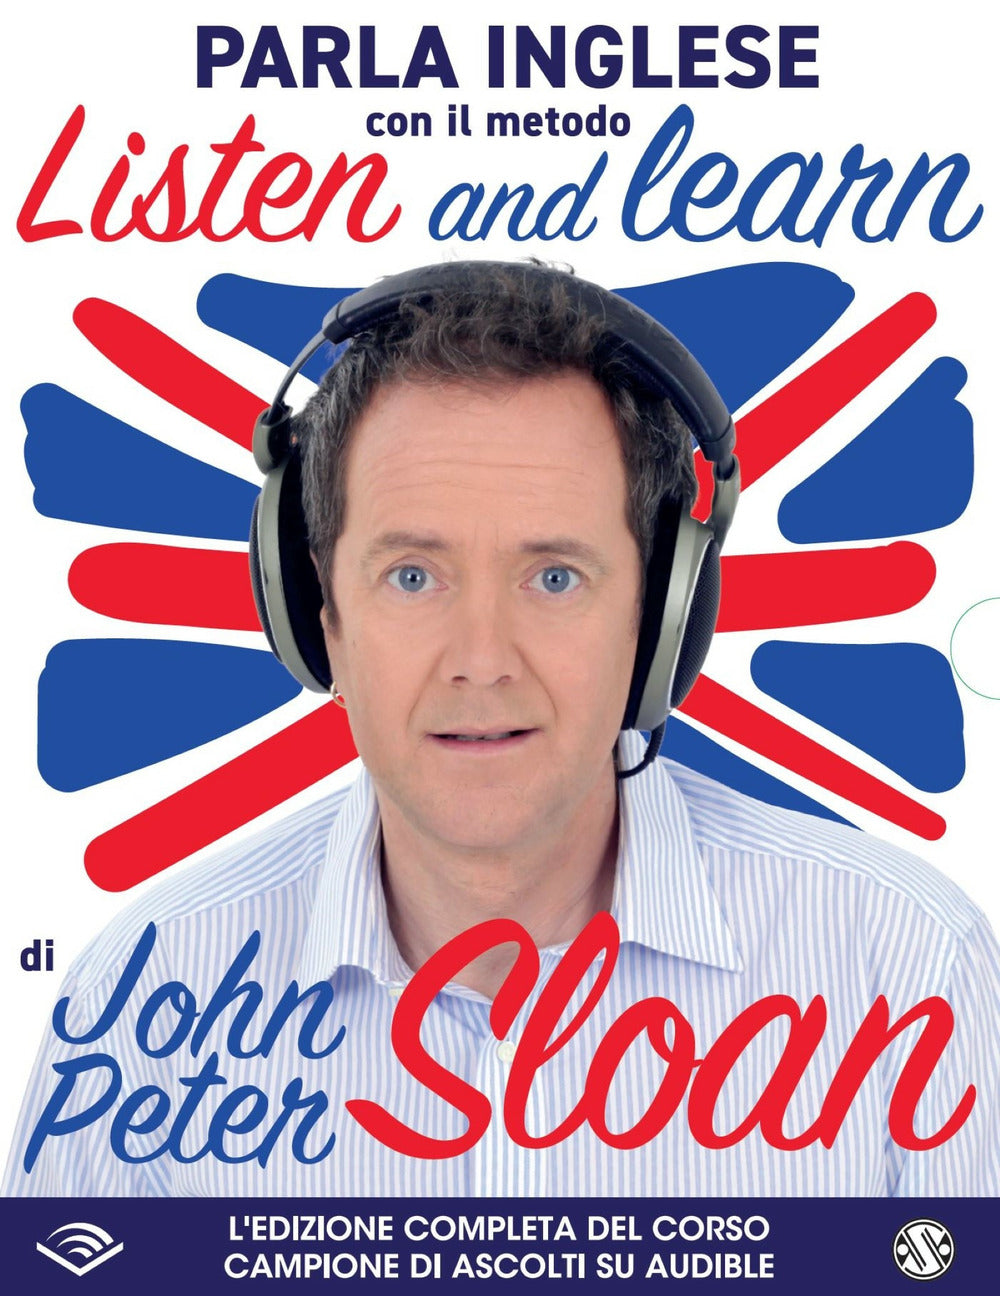 Listen and learn con John Peter Sloan letto da John Peter Sloan. Audiolibro. CD Audio formato MP3. Con Libro in brossura.